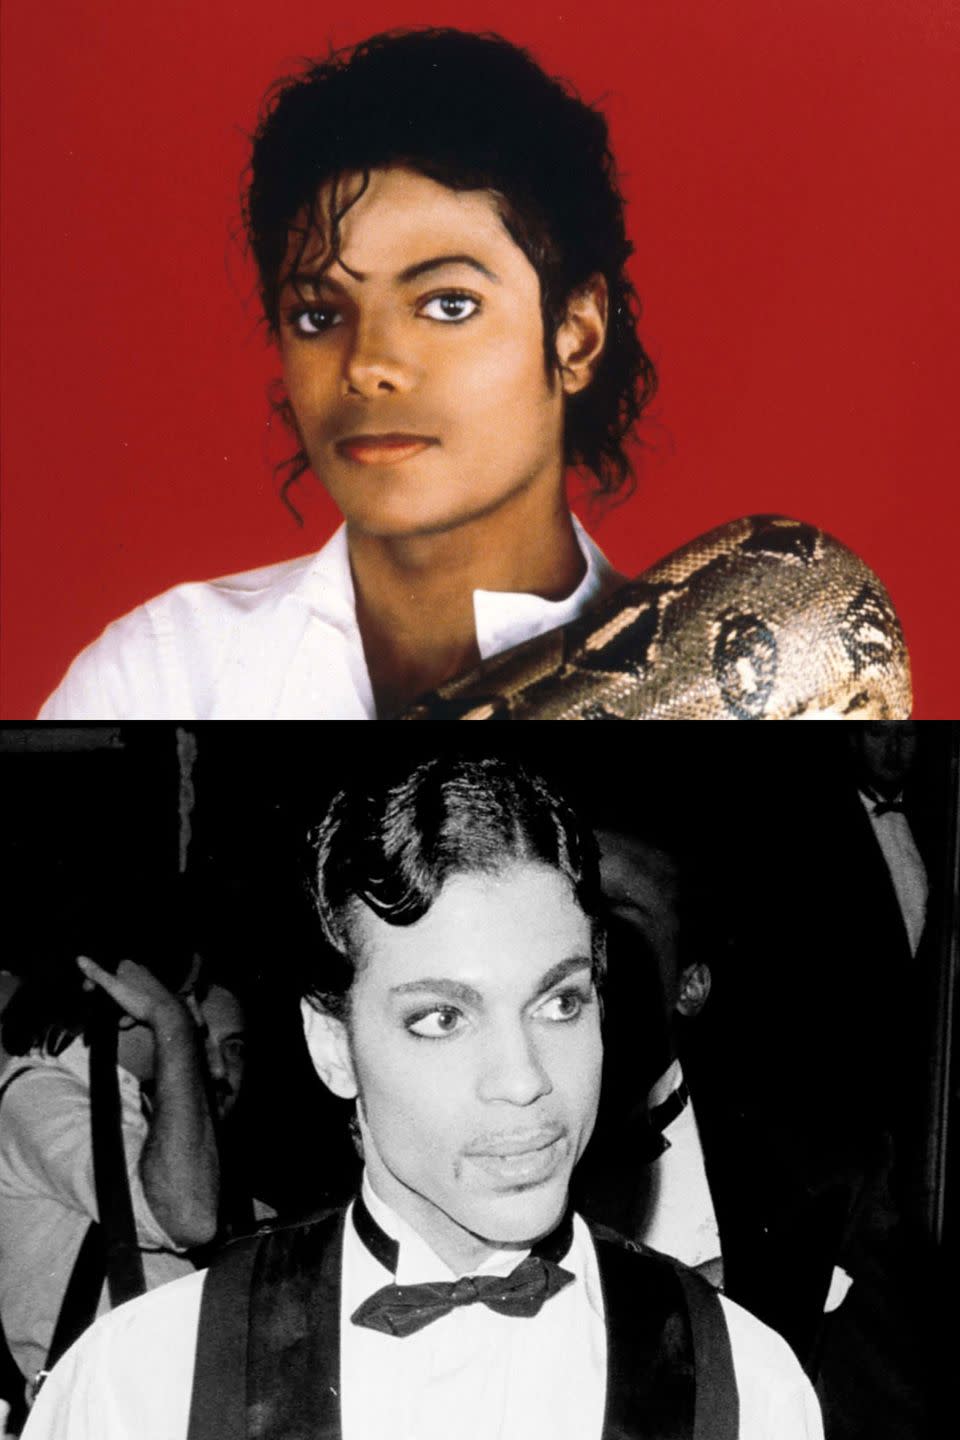 1982: Michael Jackson vs. Prince